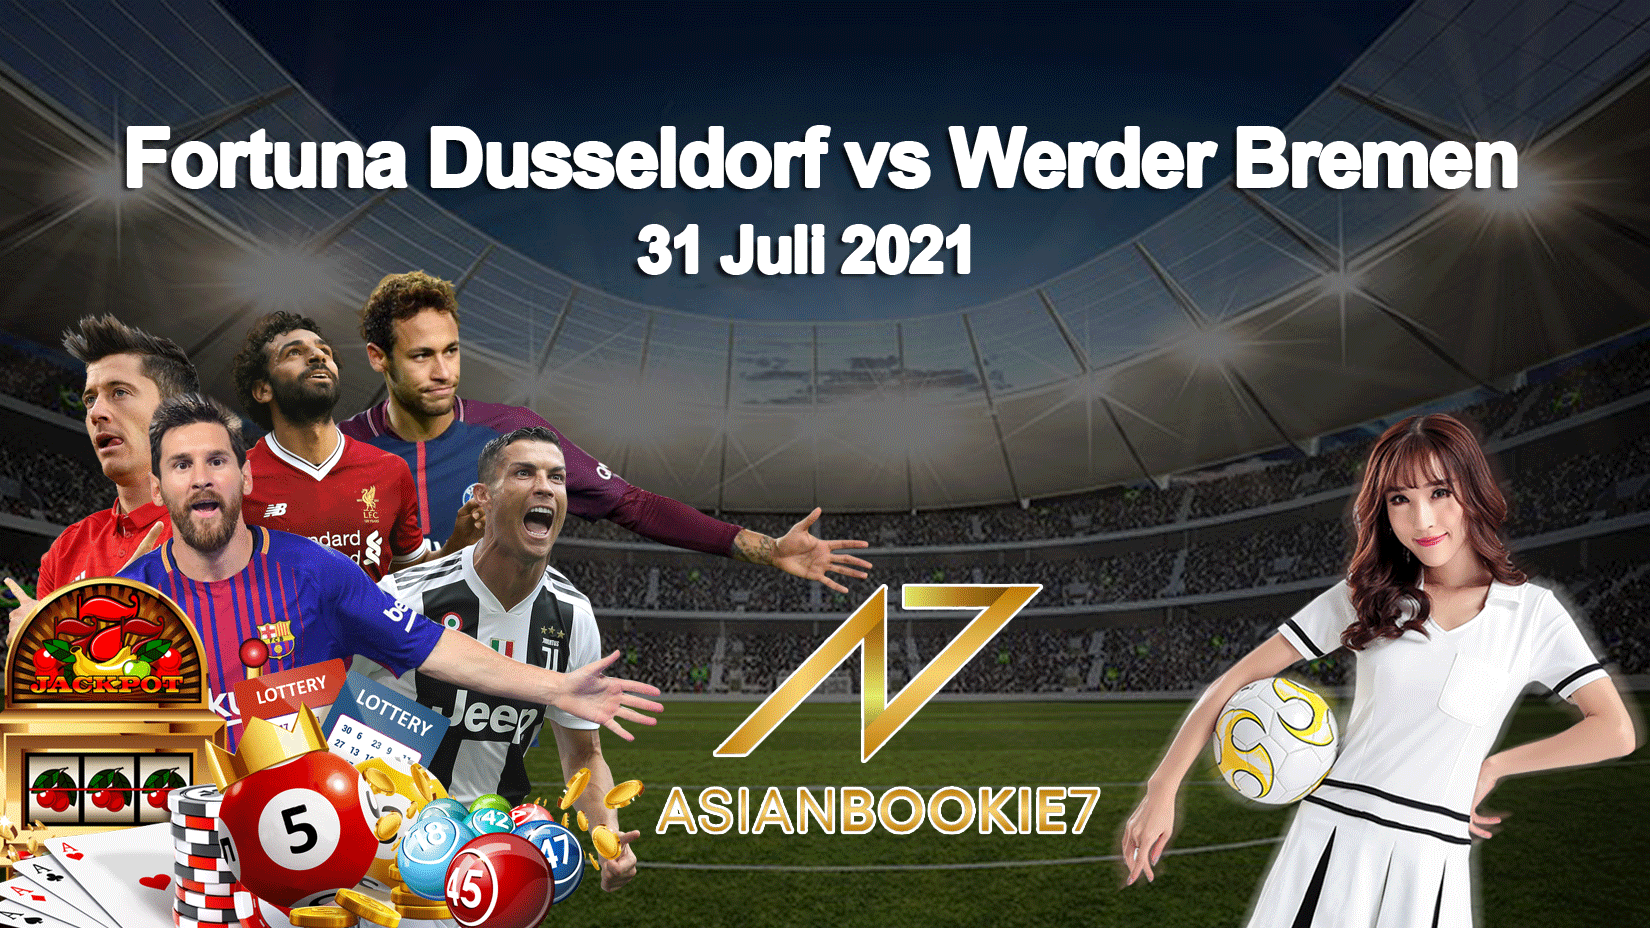 Prediksi Fortuna Dusseldorf vs Werder Bremen 31 Juli 2021